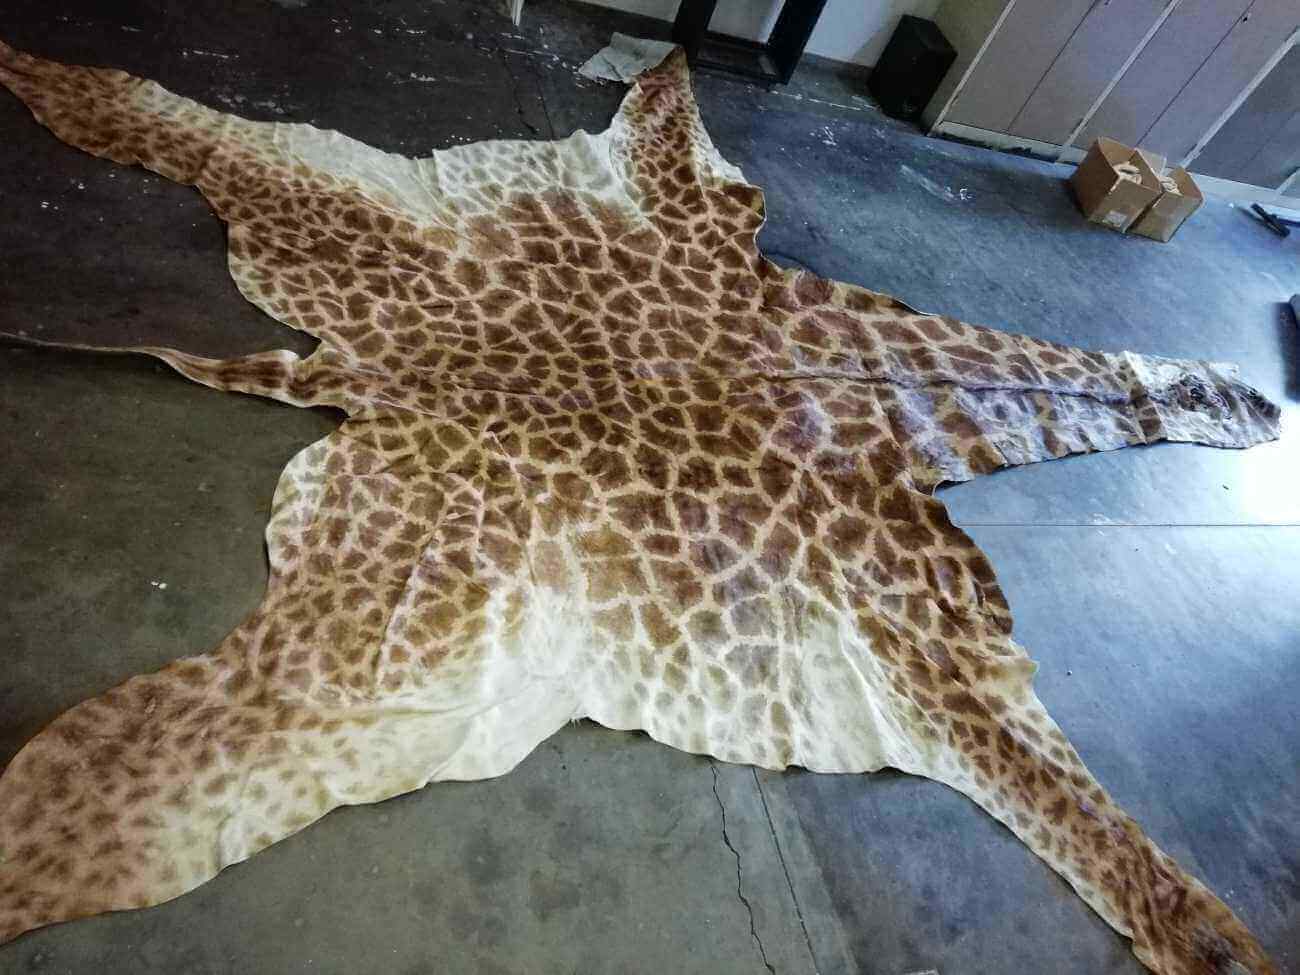 Giraffe hide